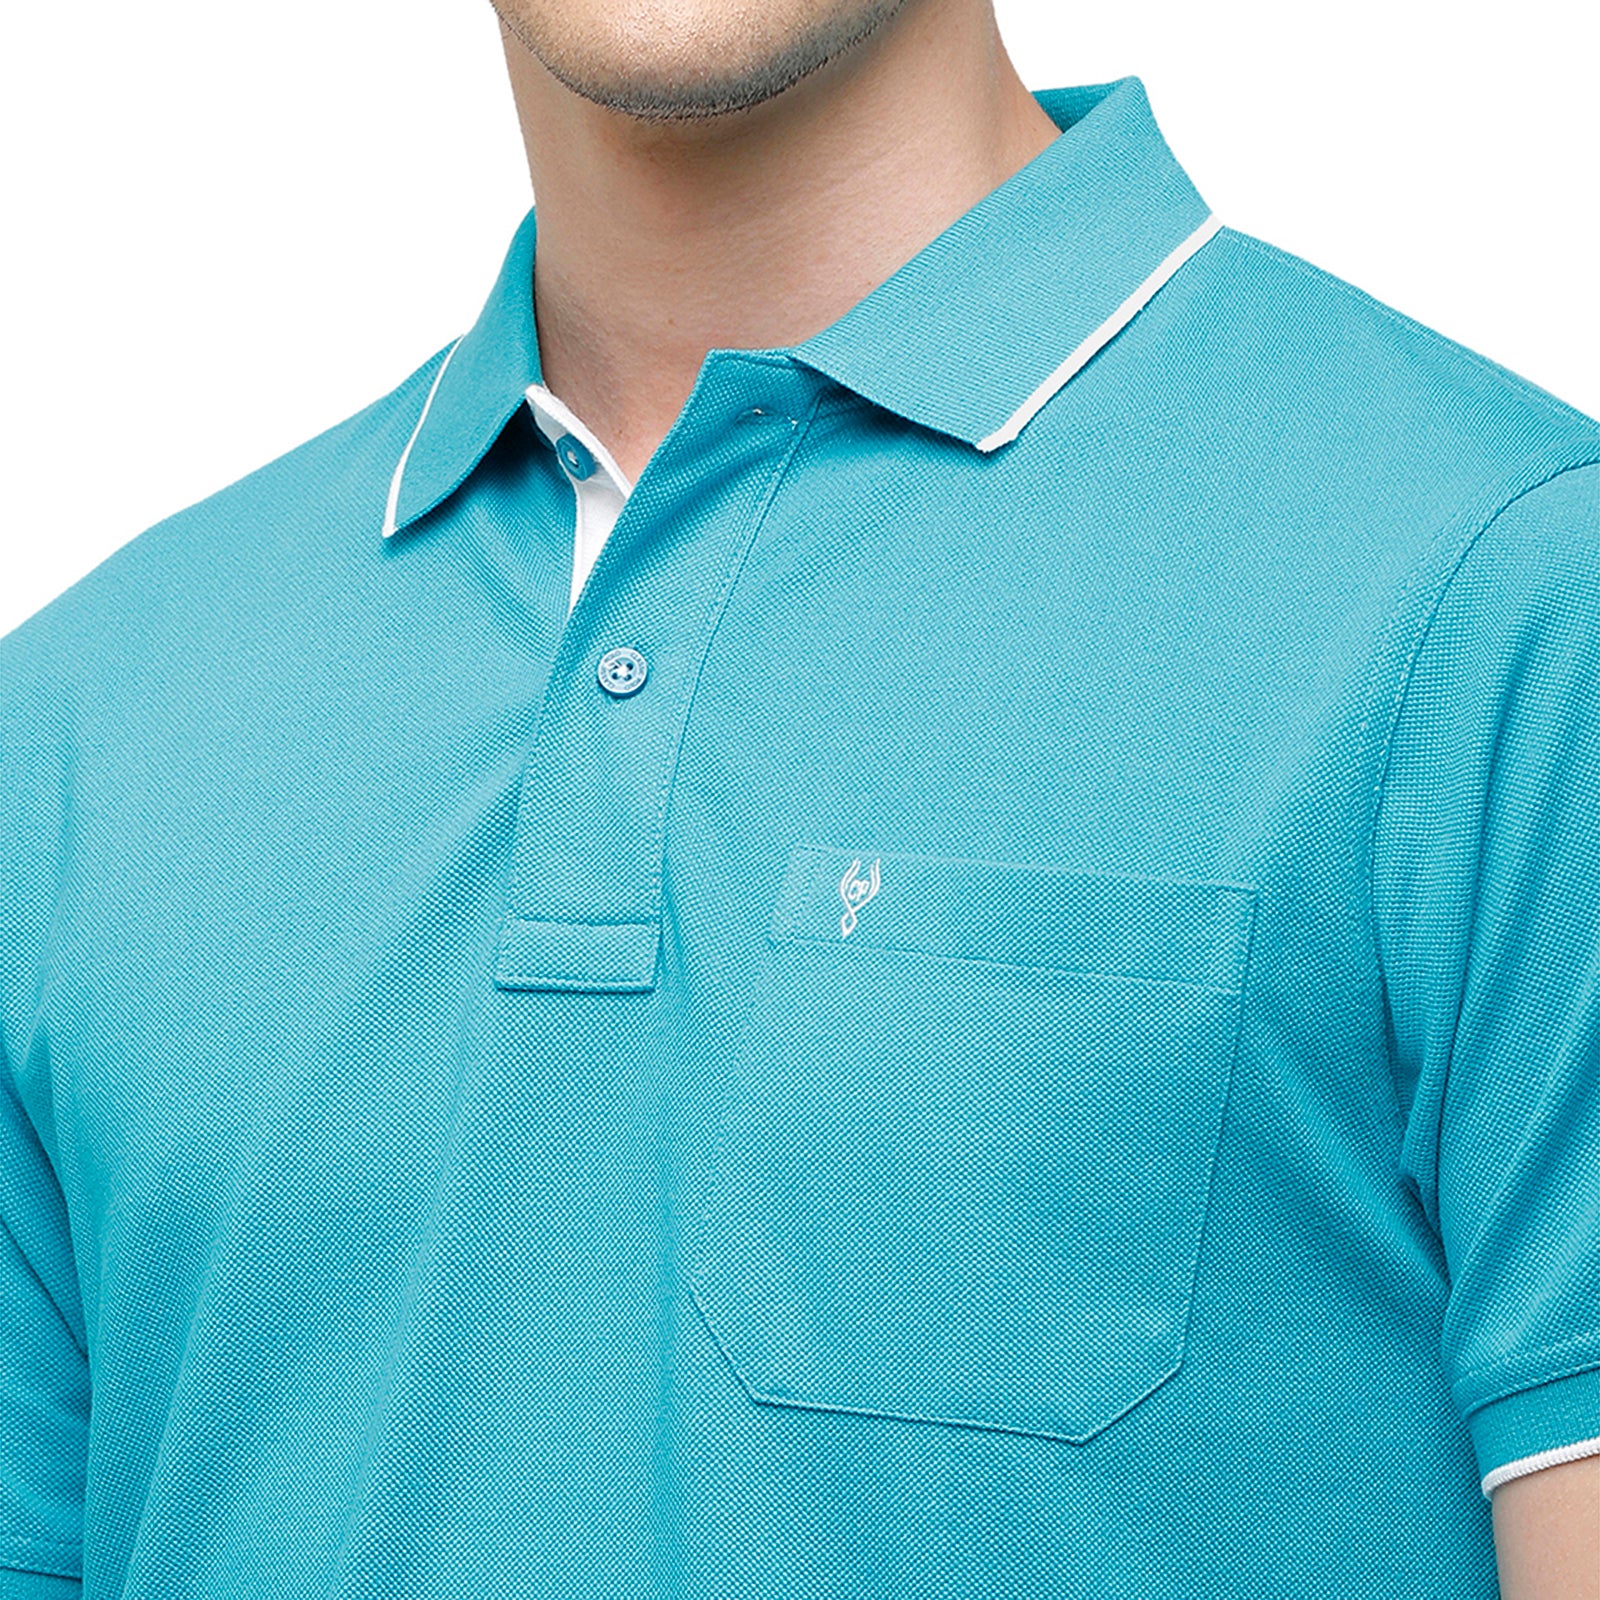 Classic Polo Men's Smart Double Pique Polo Half Sleeve Authentic Fit T-Shirt | Nova - Breeze